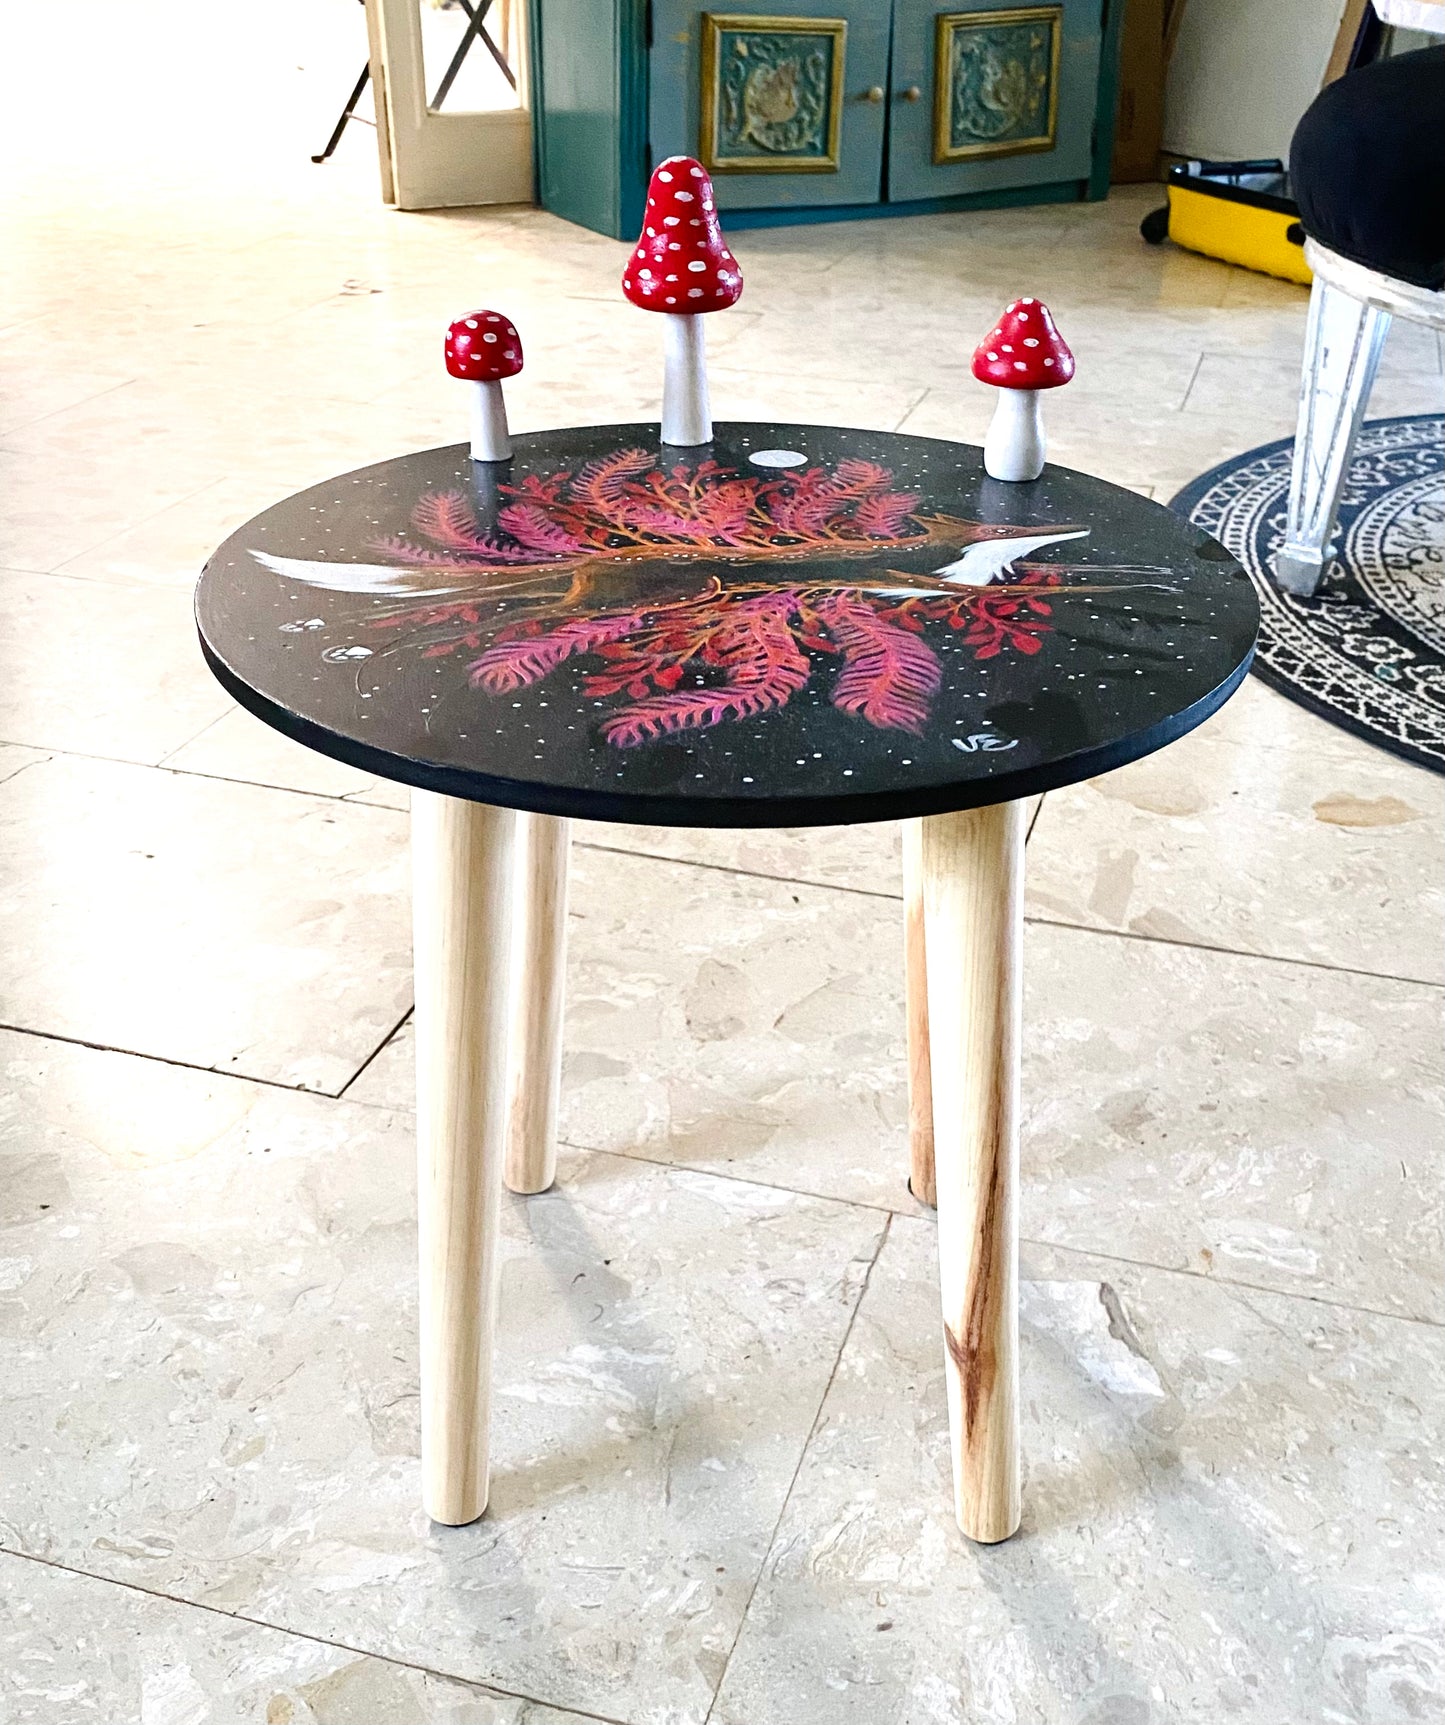 Medium sized hand-painted round stand/table with fungi / Közepes méretű kézzel festett kerek állvány/asztalka, gombákkal